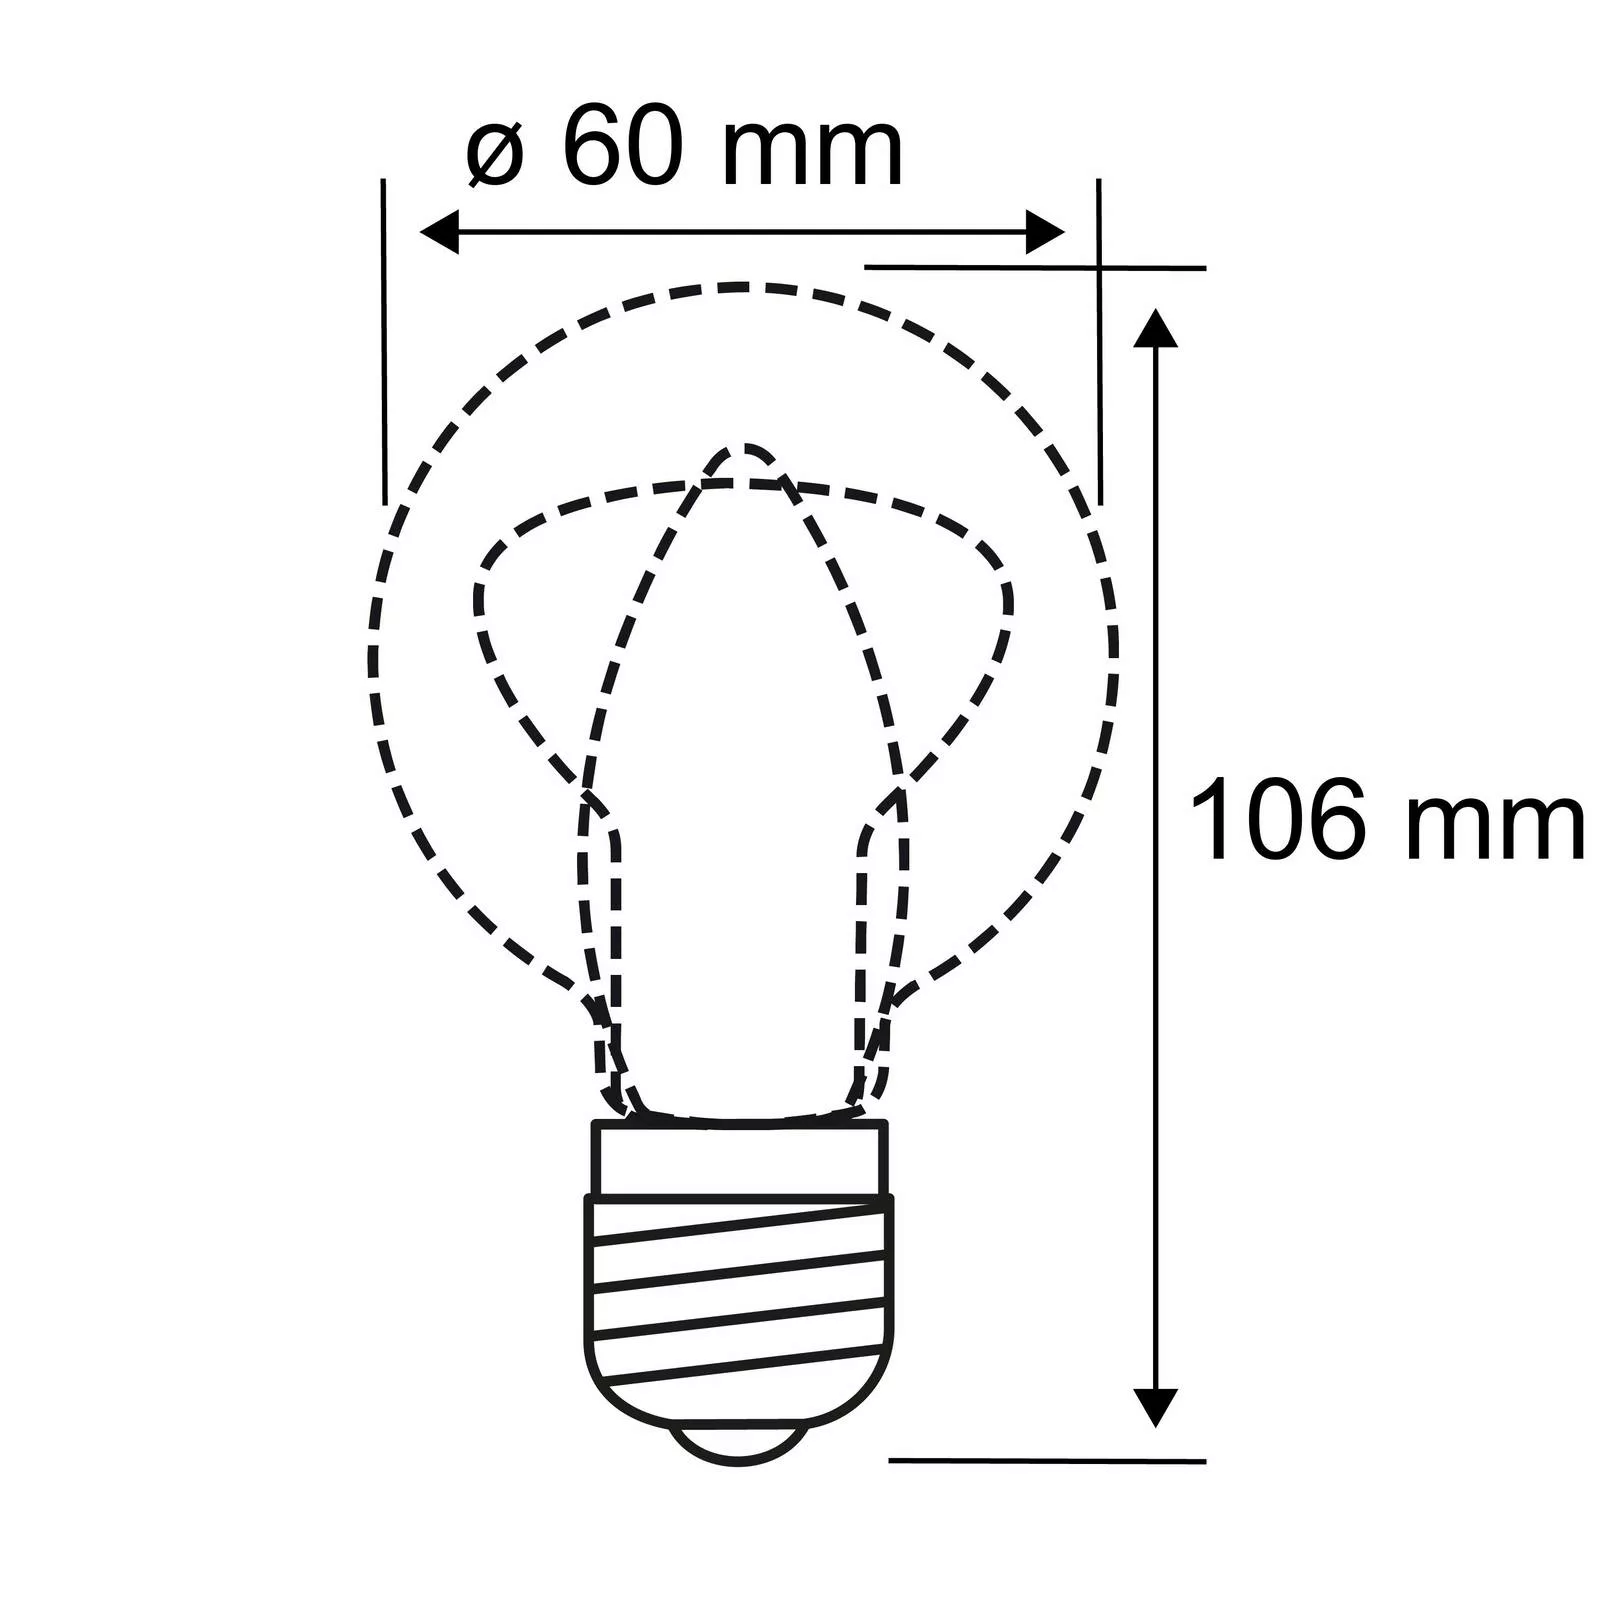 Paulmann LED-Lampe E27 9W 6.500K matt dimmbar günstig online kaufen